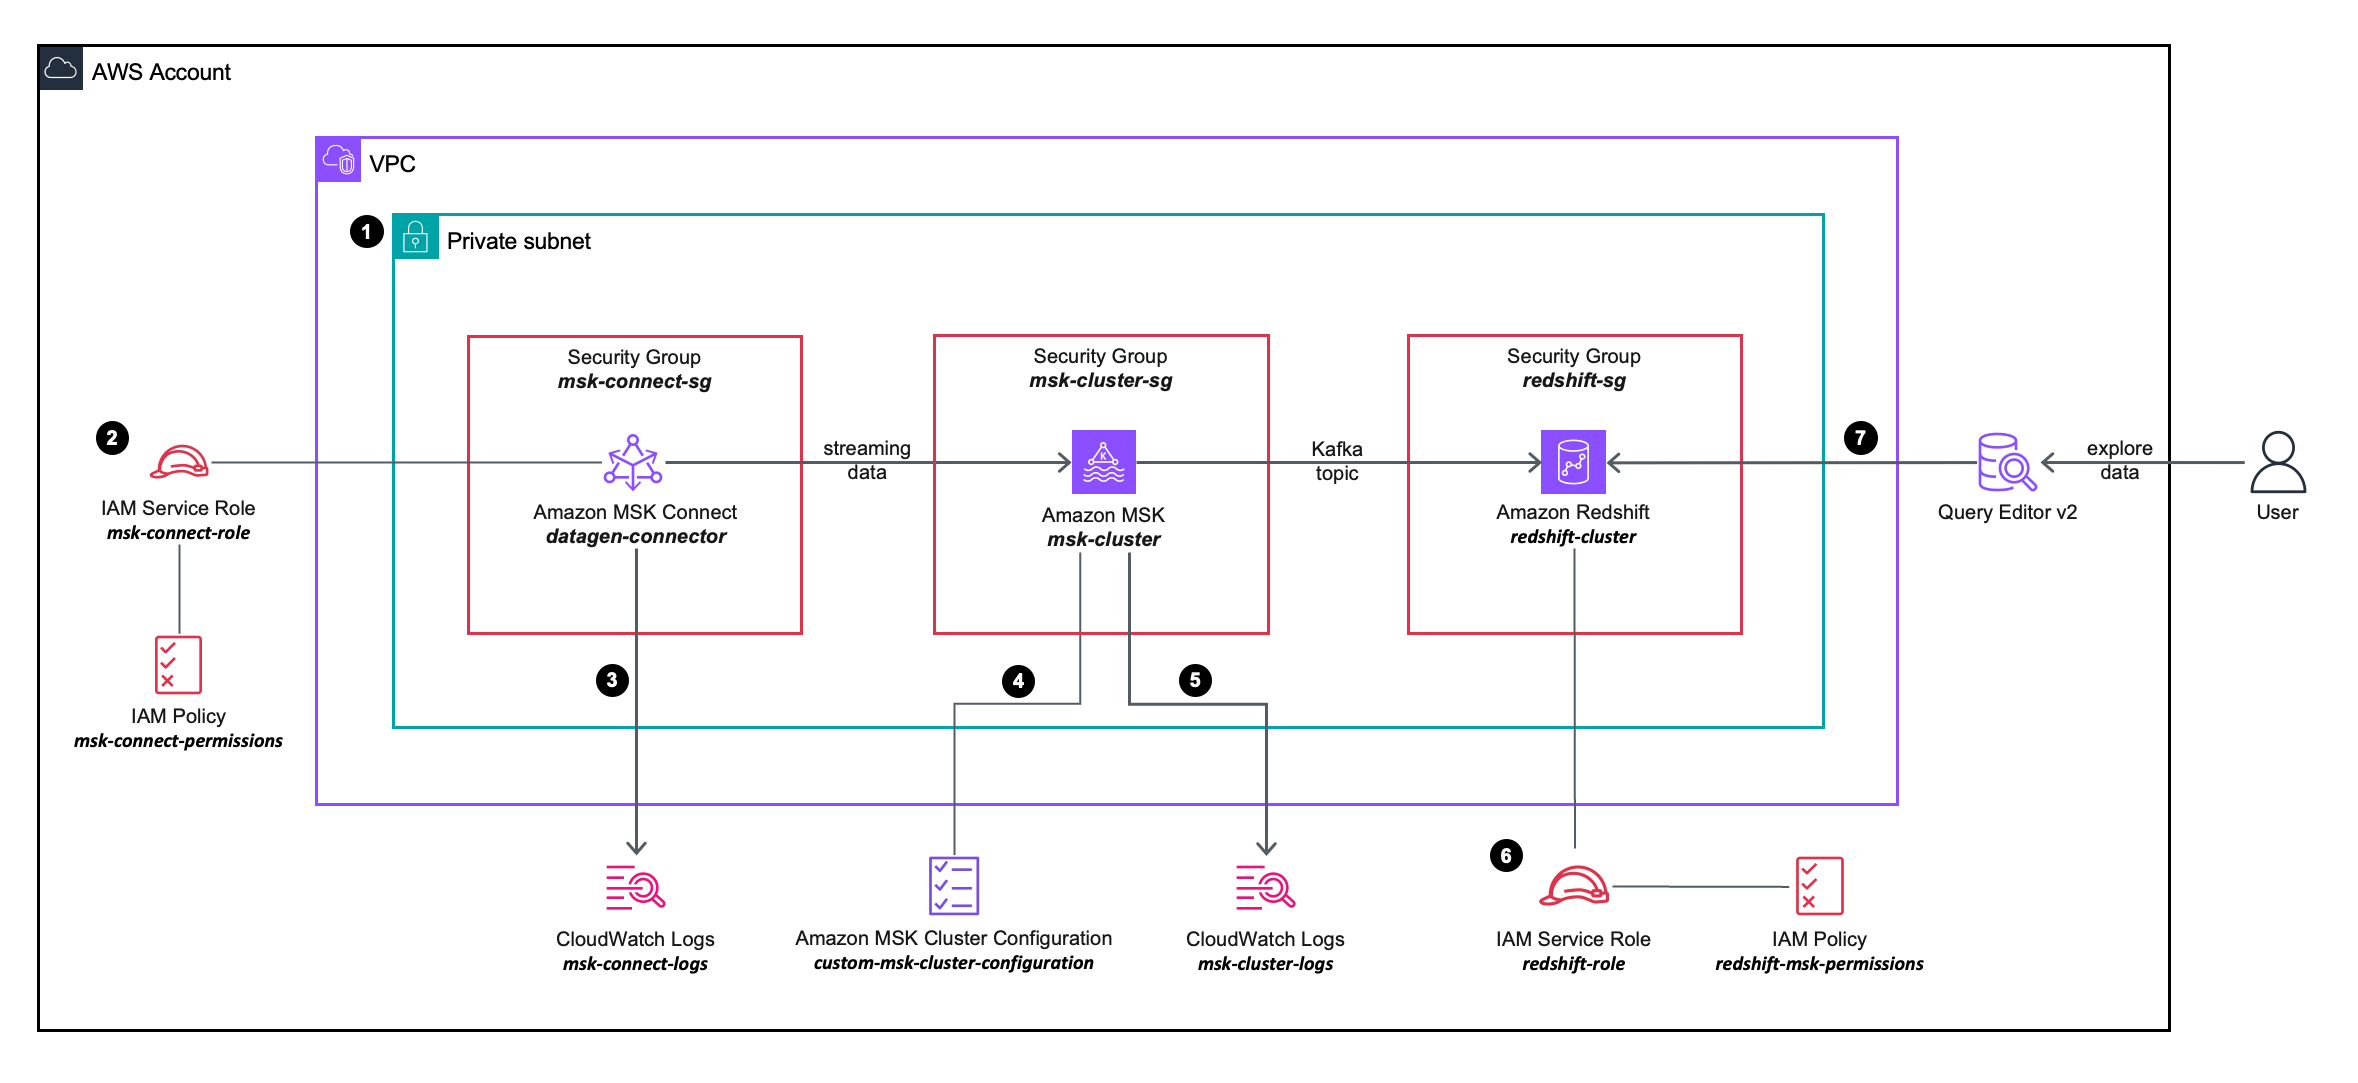 oplossingsarchitectuurdiagram waarin de configuratie en integratie van de AWS-services die u gaat gebruiken gedetailleerder wordt beschreven